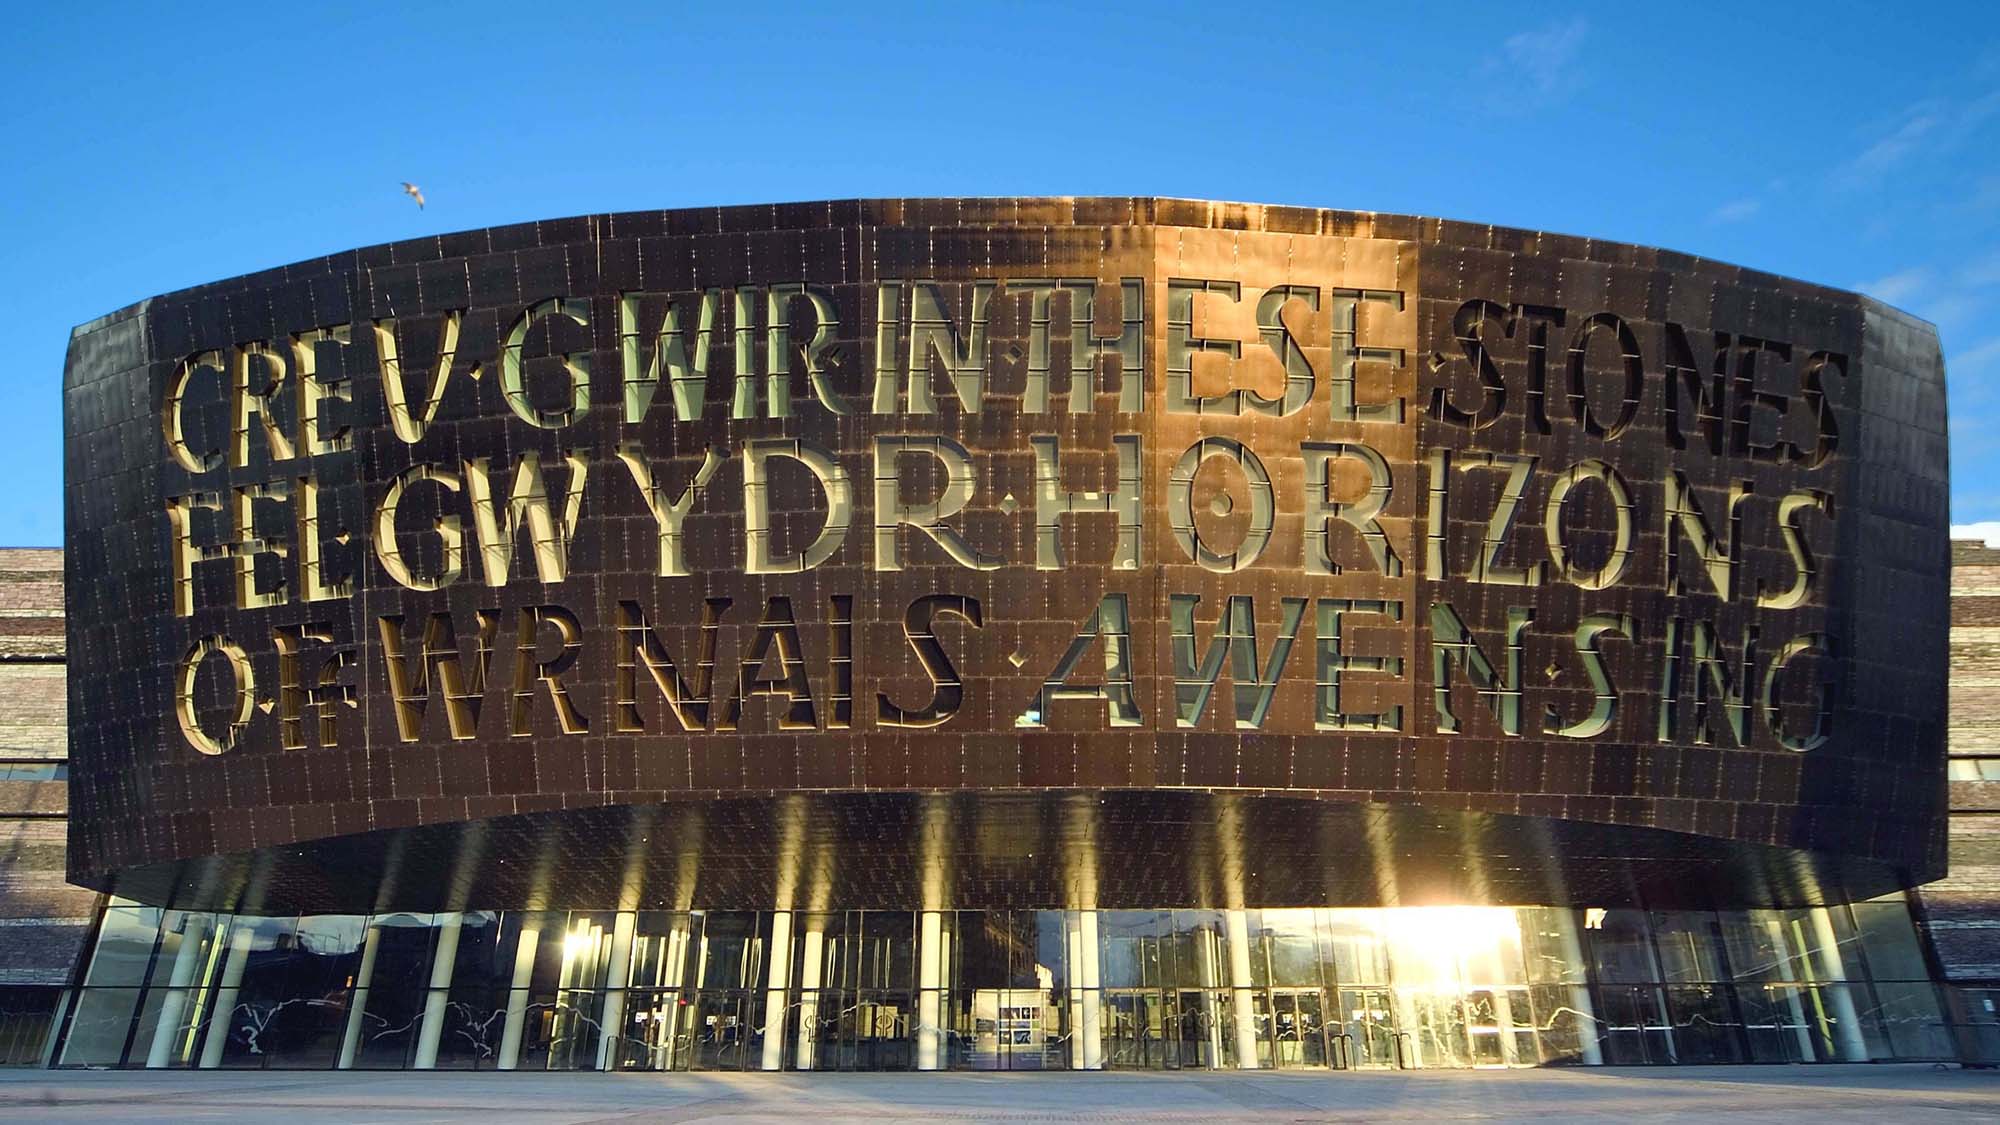 Wales Millennium centre